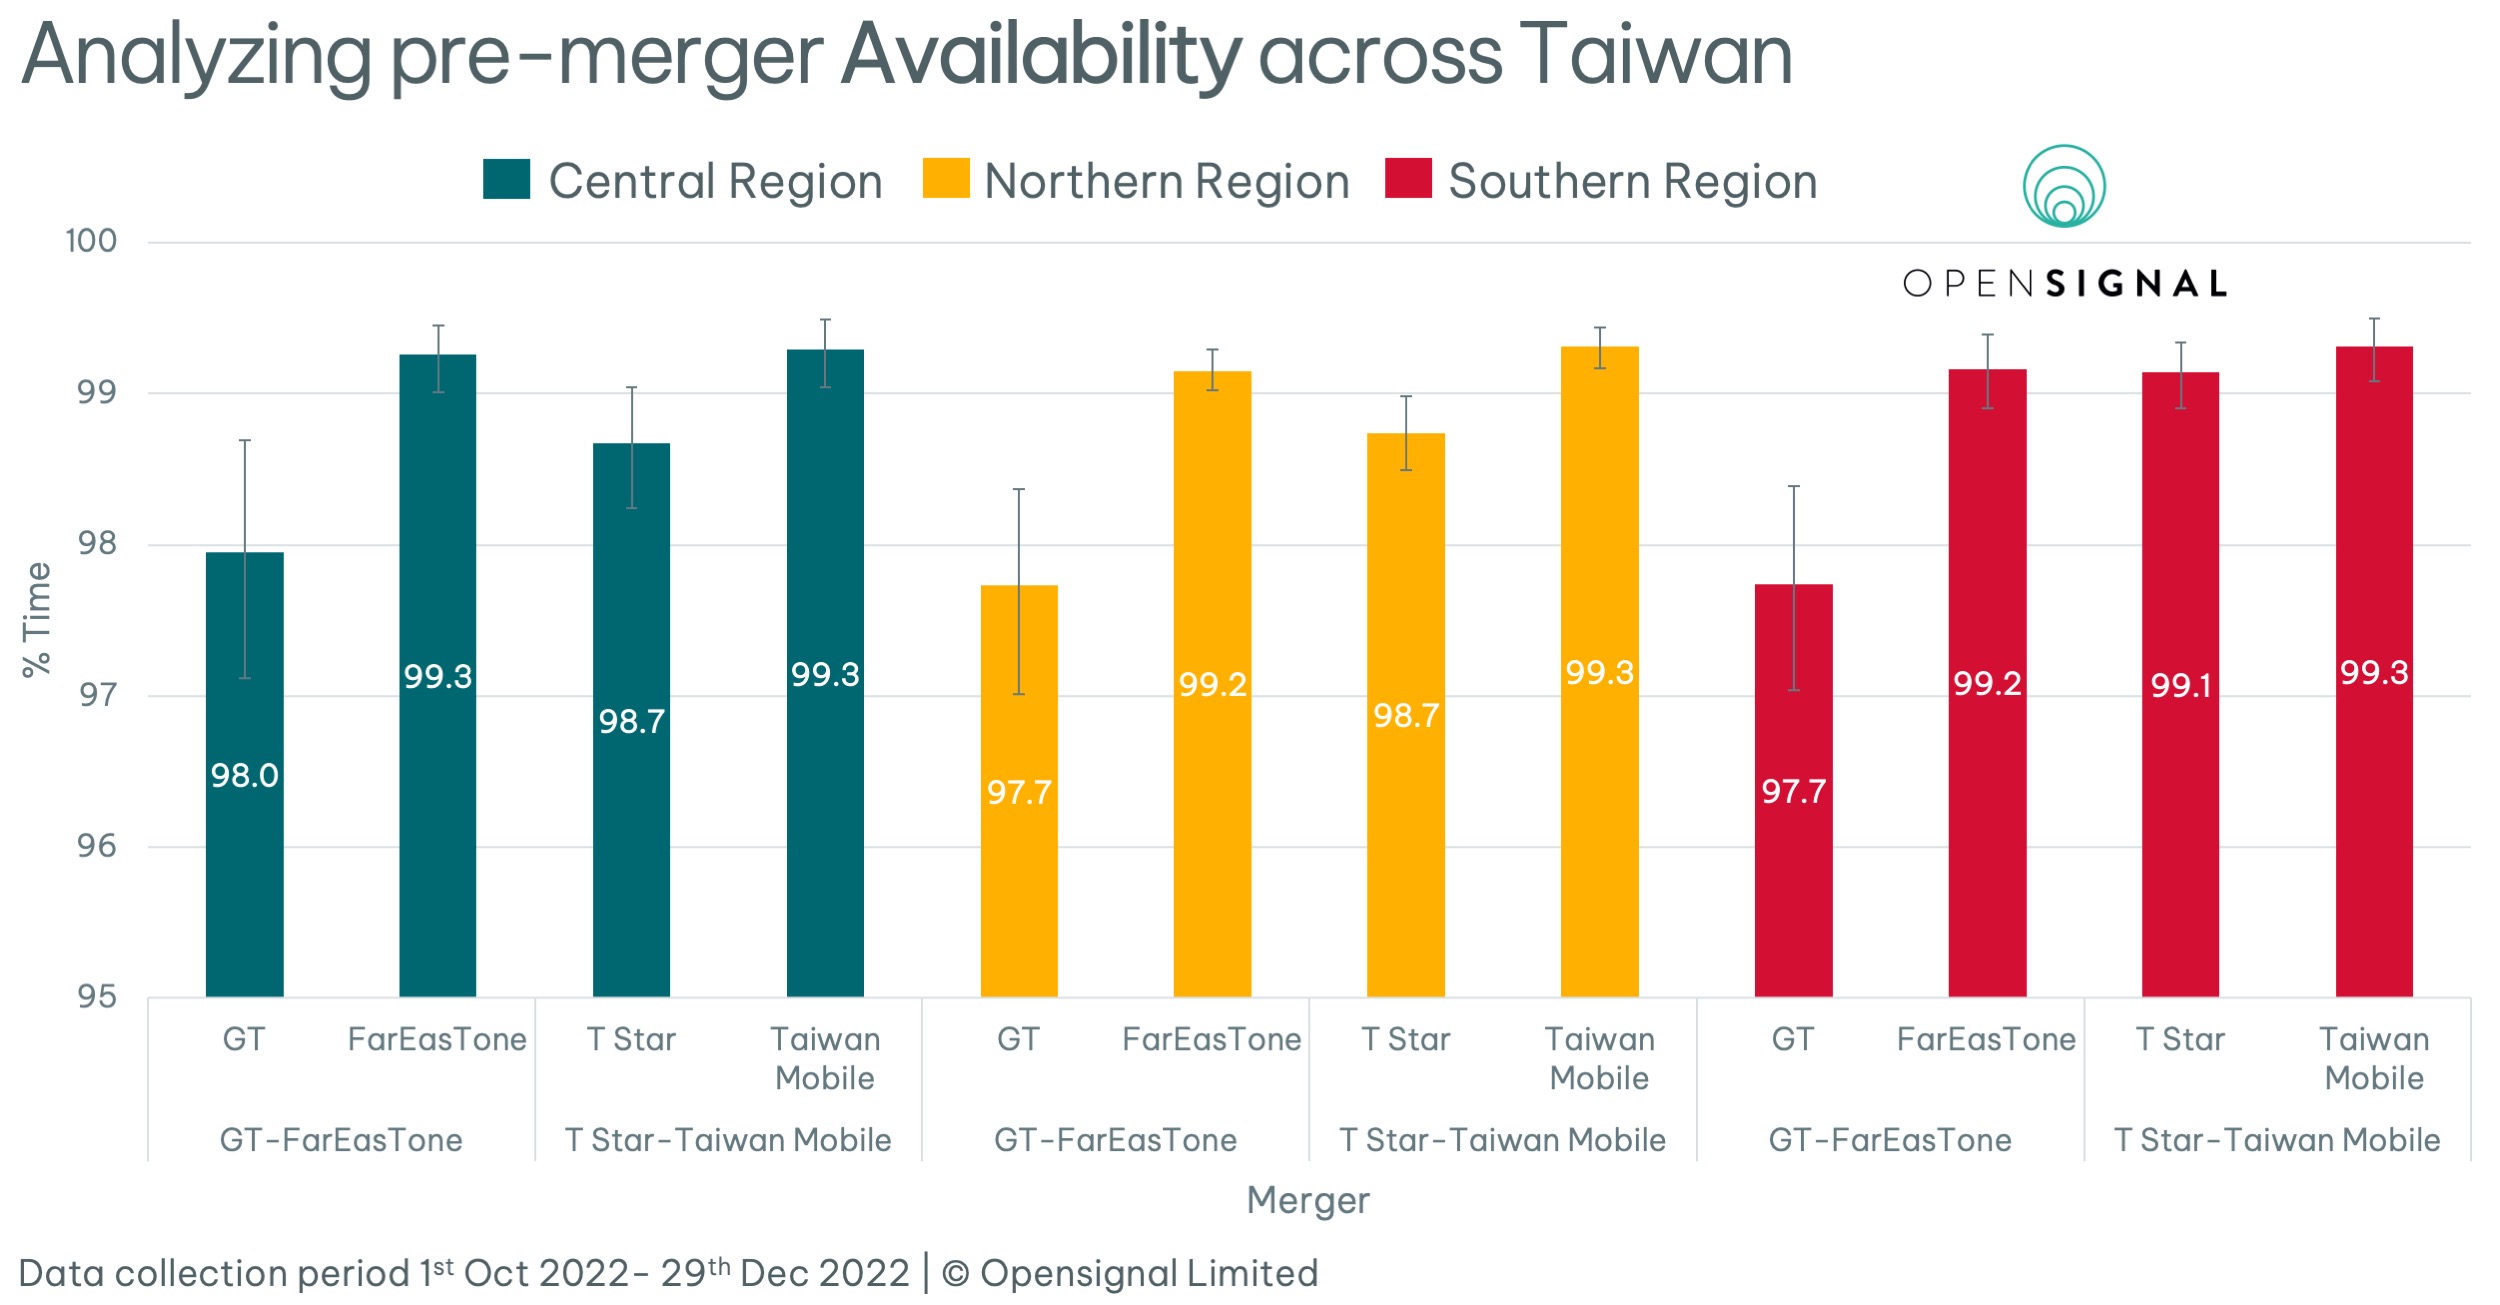 收購前電信者可用率分析，藍綠色為台灣、黃色為北台灣、紅色為南台灣；亞太電信在所有地區的可用率皆低於遠傳電信，台灣之星也低於台灣大哥大，因合併後，亞太和台灣之星的電信用戶網路可用率可望提高。